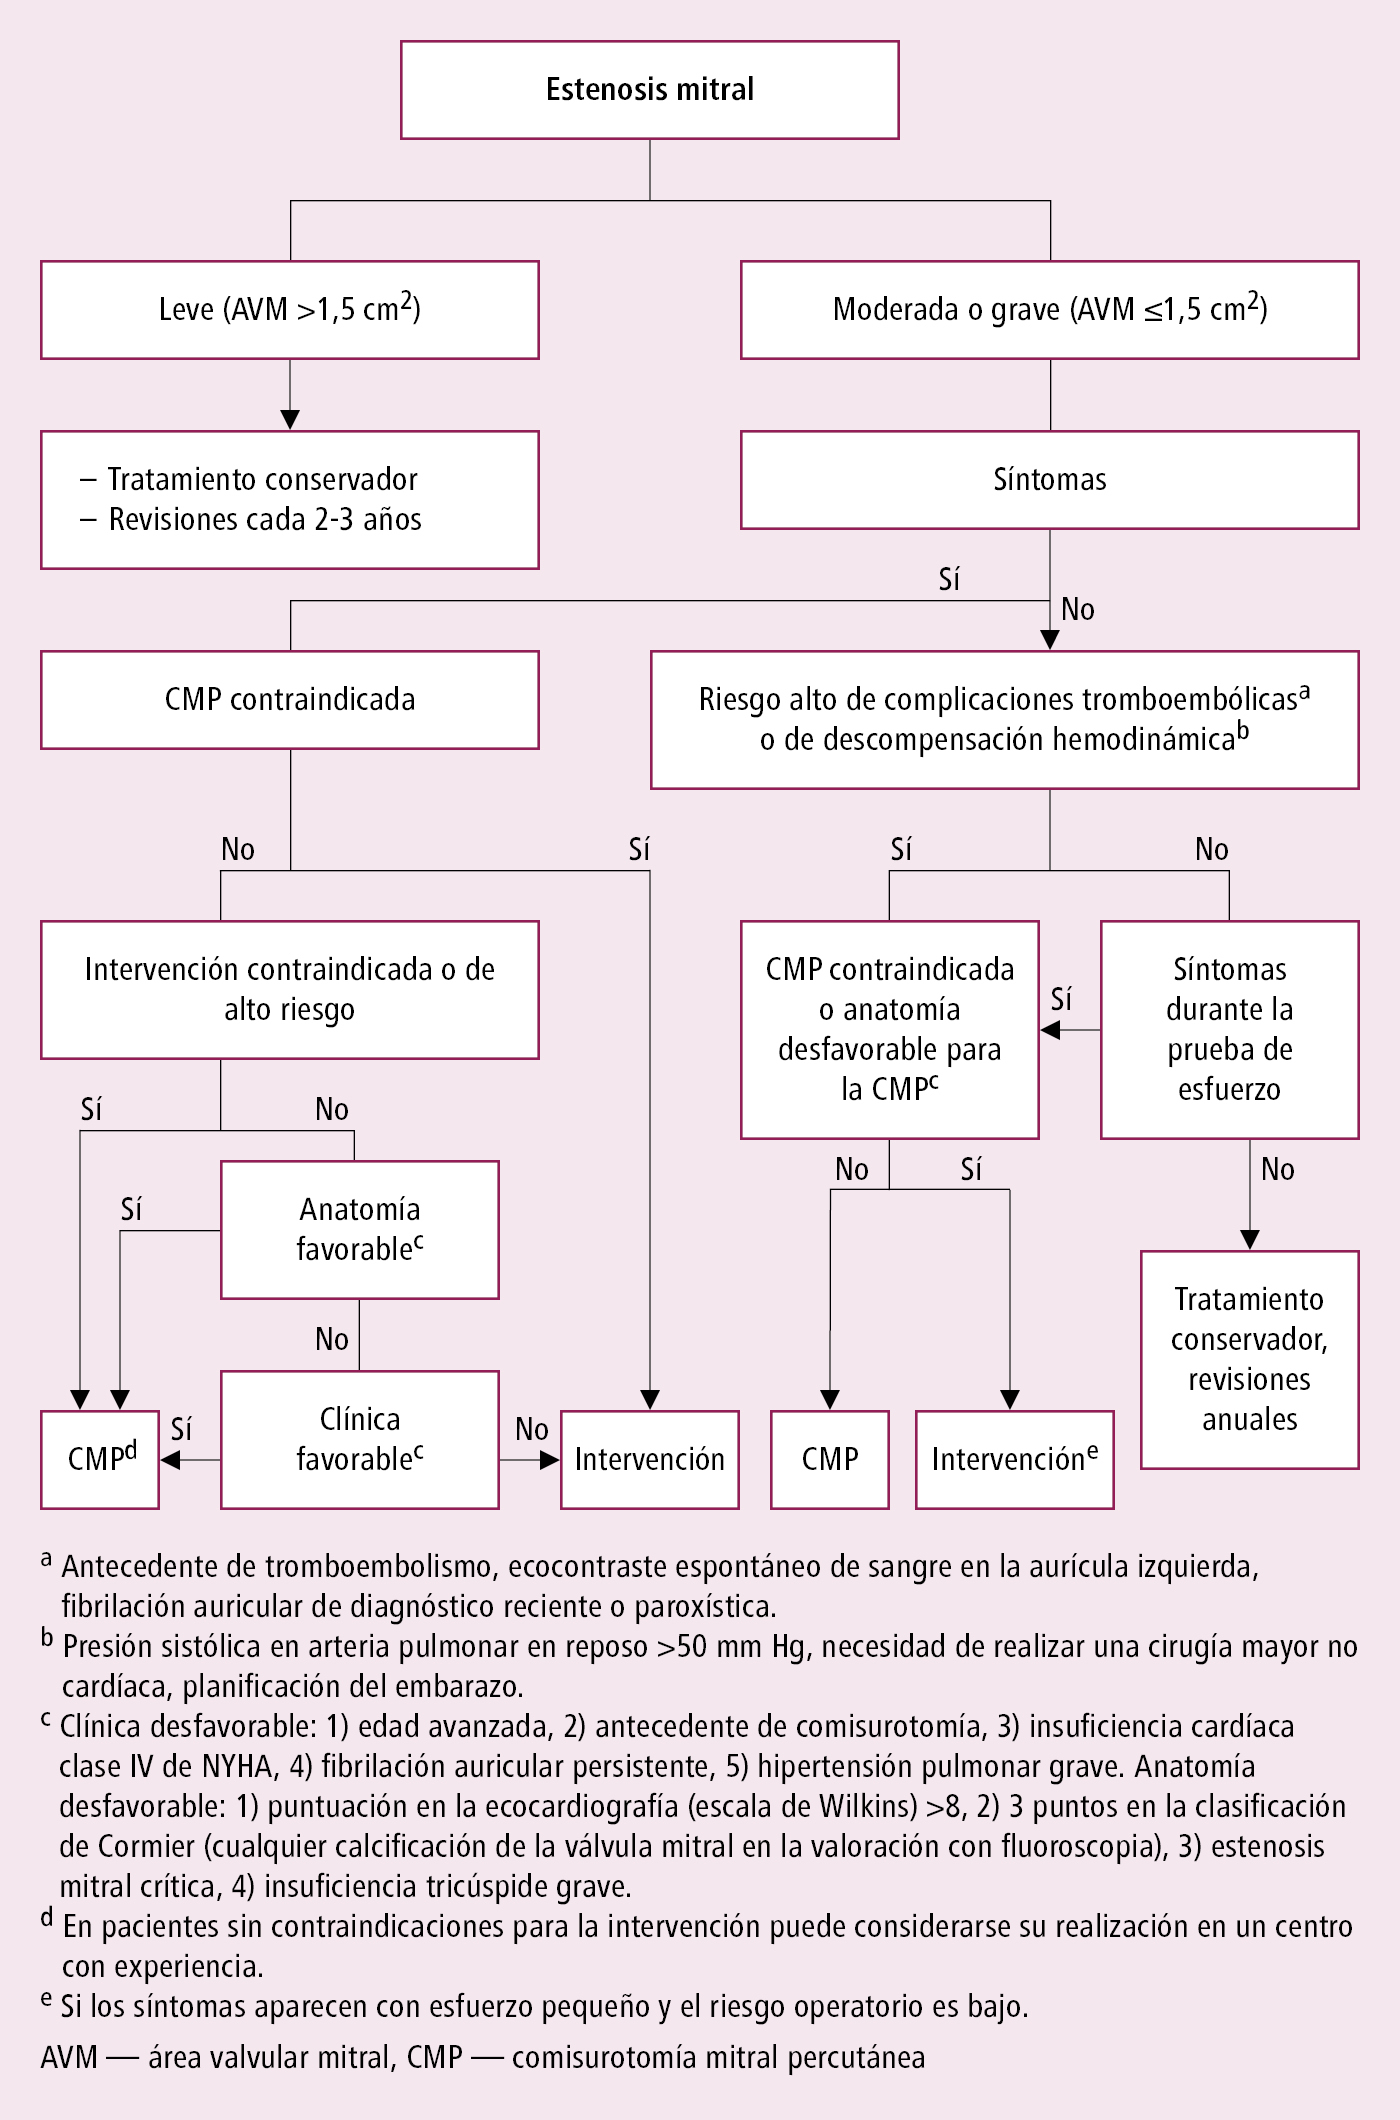    Fig. 2.9-1.  Manejo de la estenosis mitral (según las guías de la ESC y EACTS 2017, modificado) 